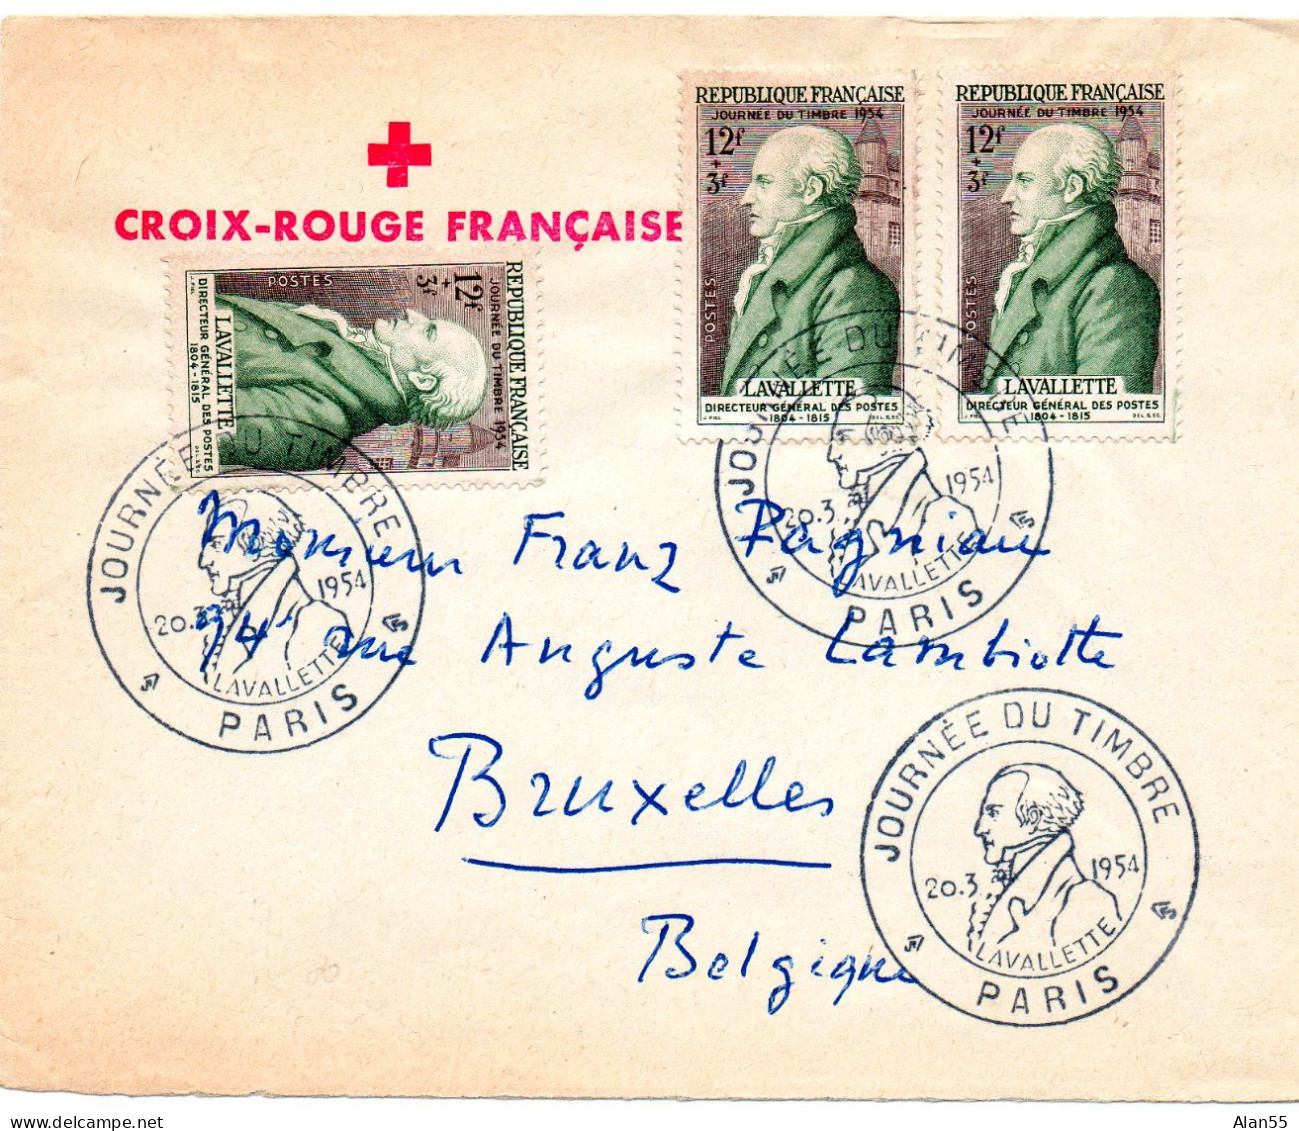 FRANCE.1954. "LAVALLETTE" .JOURNEE DU TIMBRE". LETTRE POUR LA BELGIQUE. - Tag Der Briefmarke